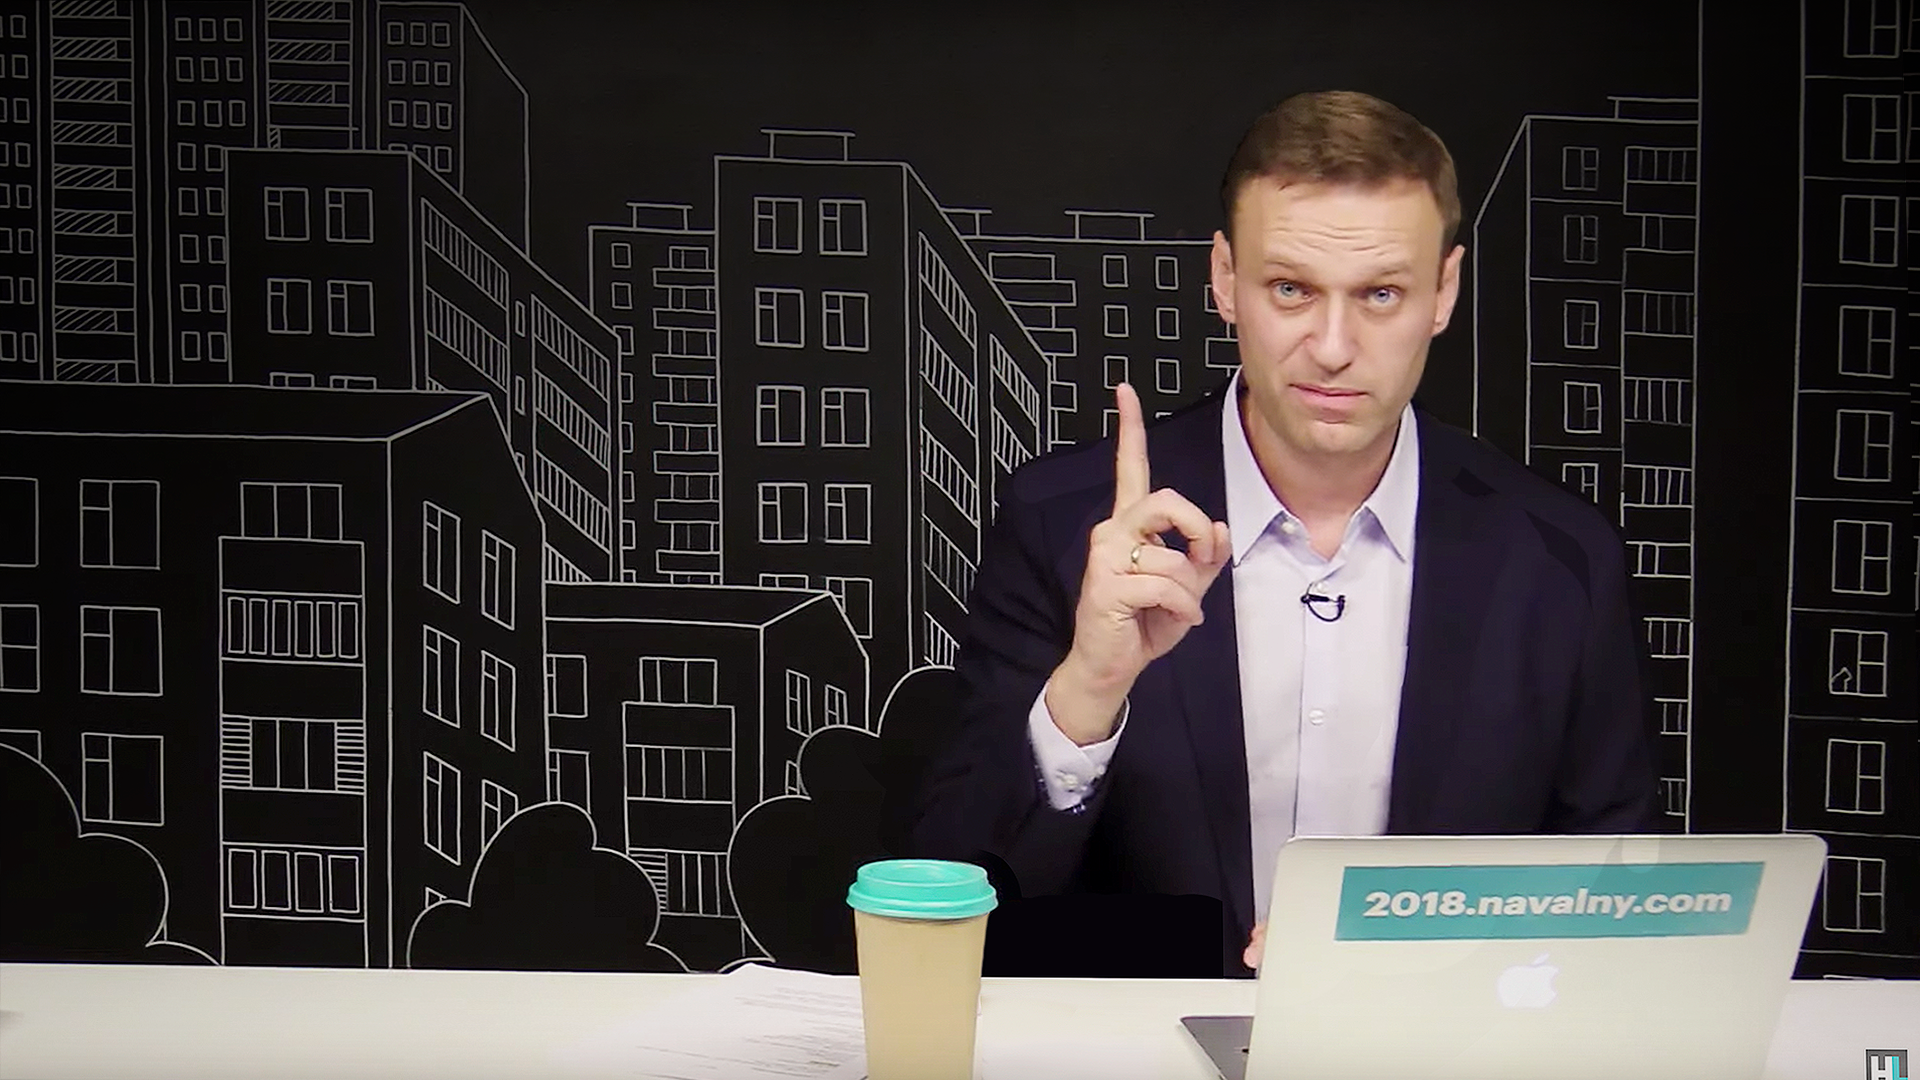 Канал навального на ютубе